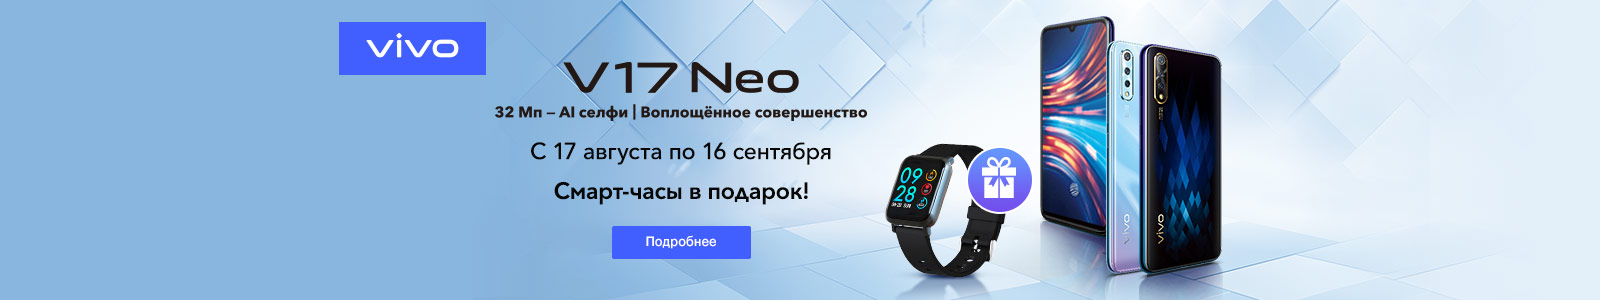 Рекламная акция Vivo «Смарт-часы Digma в подарок к смартфону Vivo V17 Neo!» в Эльдорадо